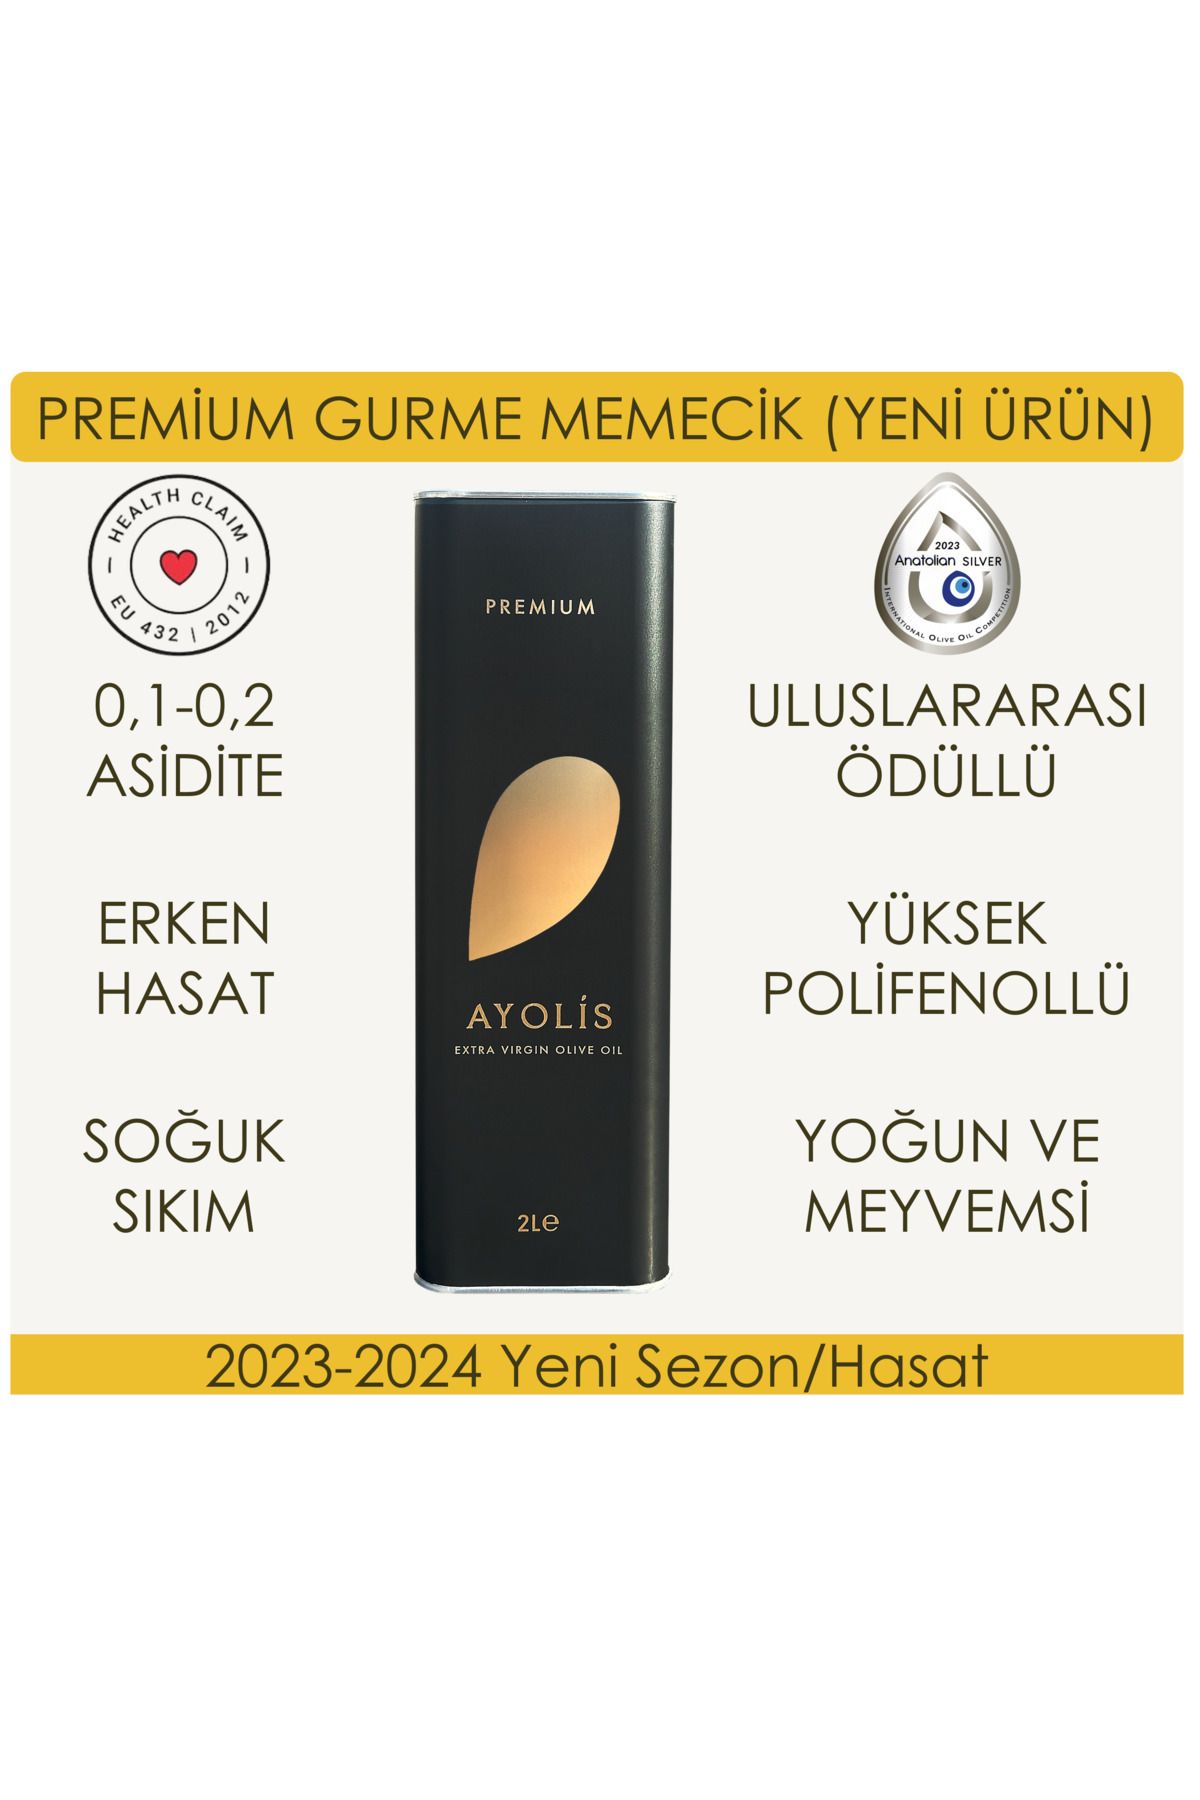 Ayolis Premium Gurme Memecik 2 Lt Yüksek Polifenollü Erken Hasat Soğuk Sıkım Natürel Sızma Zeytinyağı